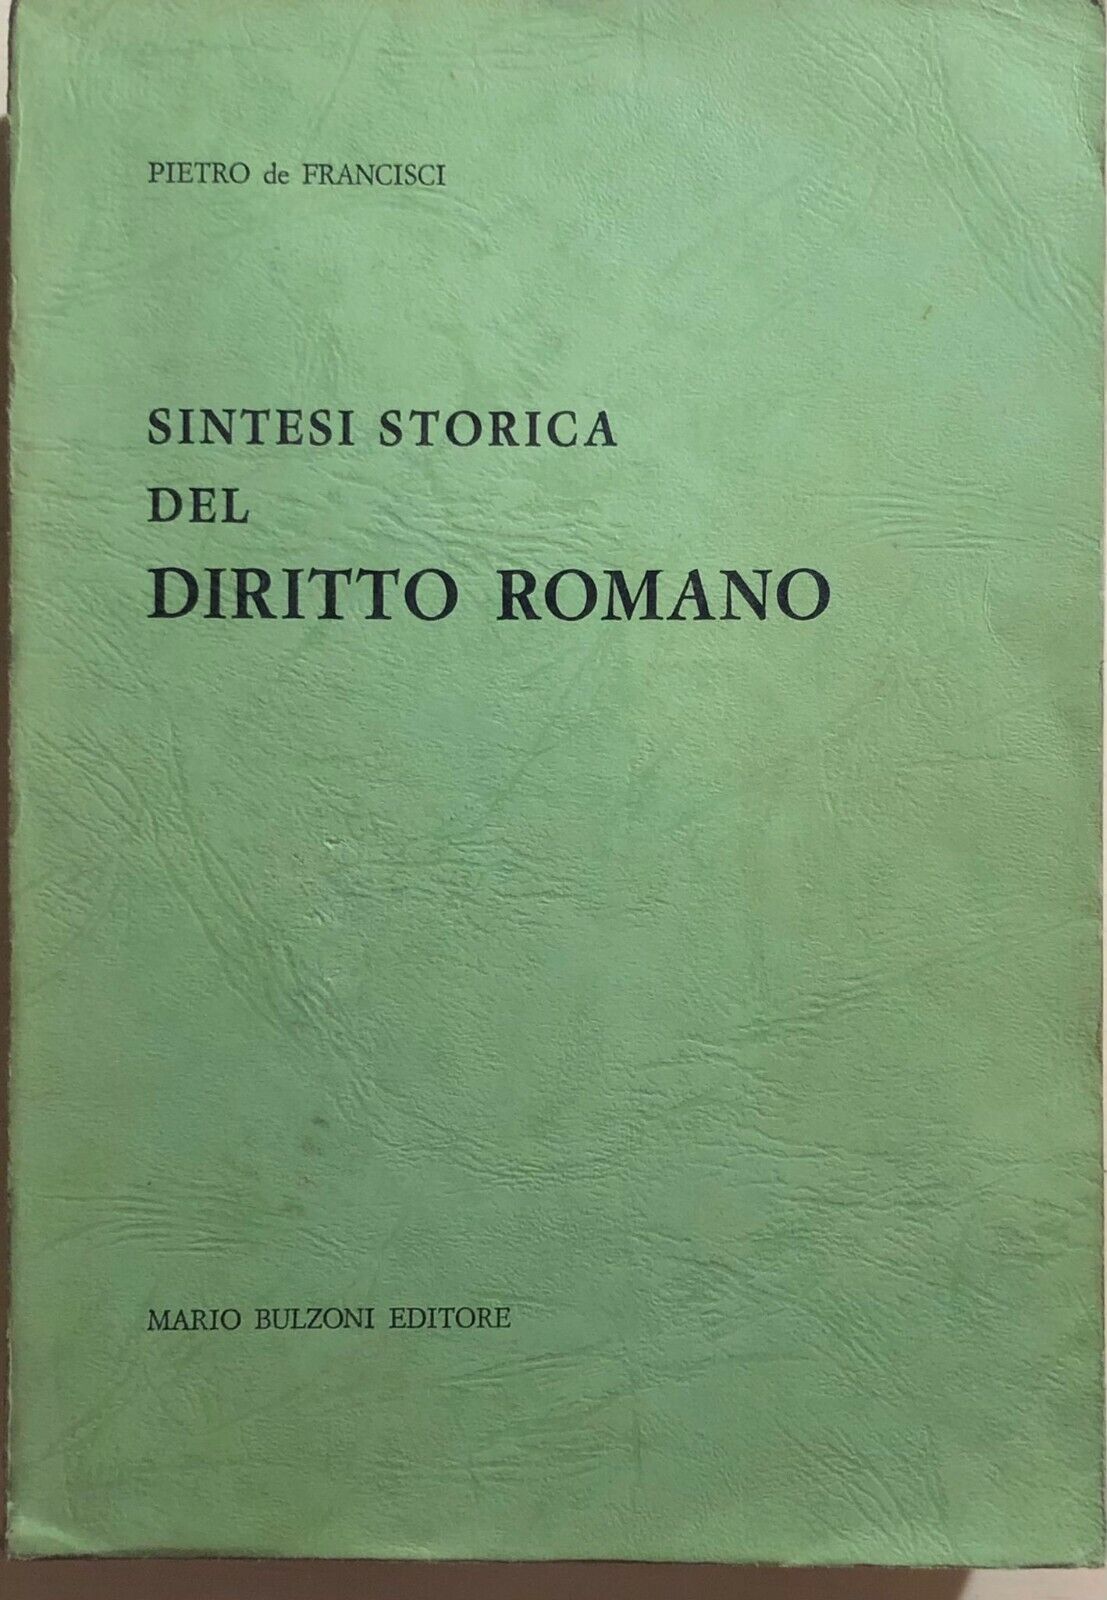 Sintesi storica del diritto romano di Pietro De Francisci, 1968, Mario Bulzoni E